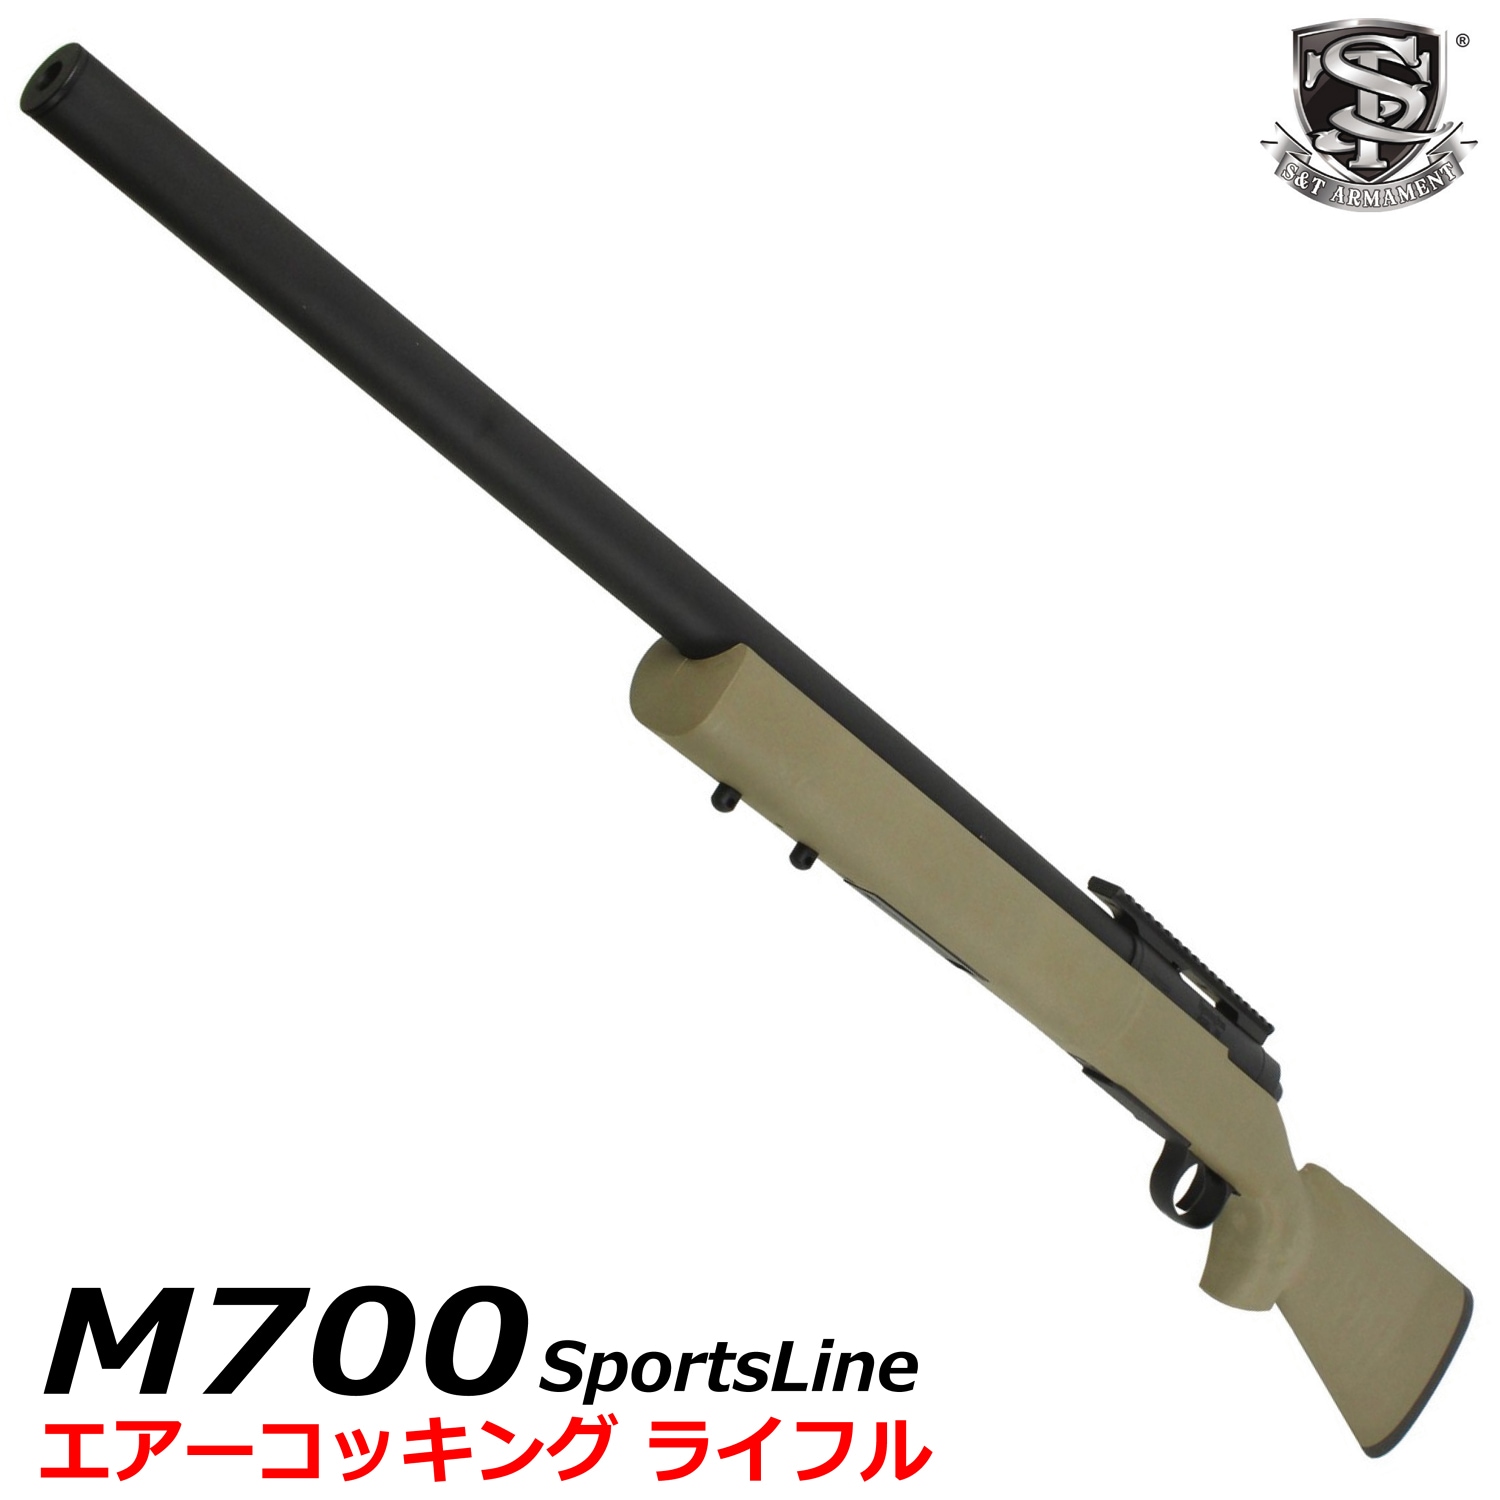 S&T M700 スポーツライン エアーコッキング ライフル TAN【180 